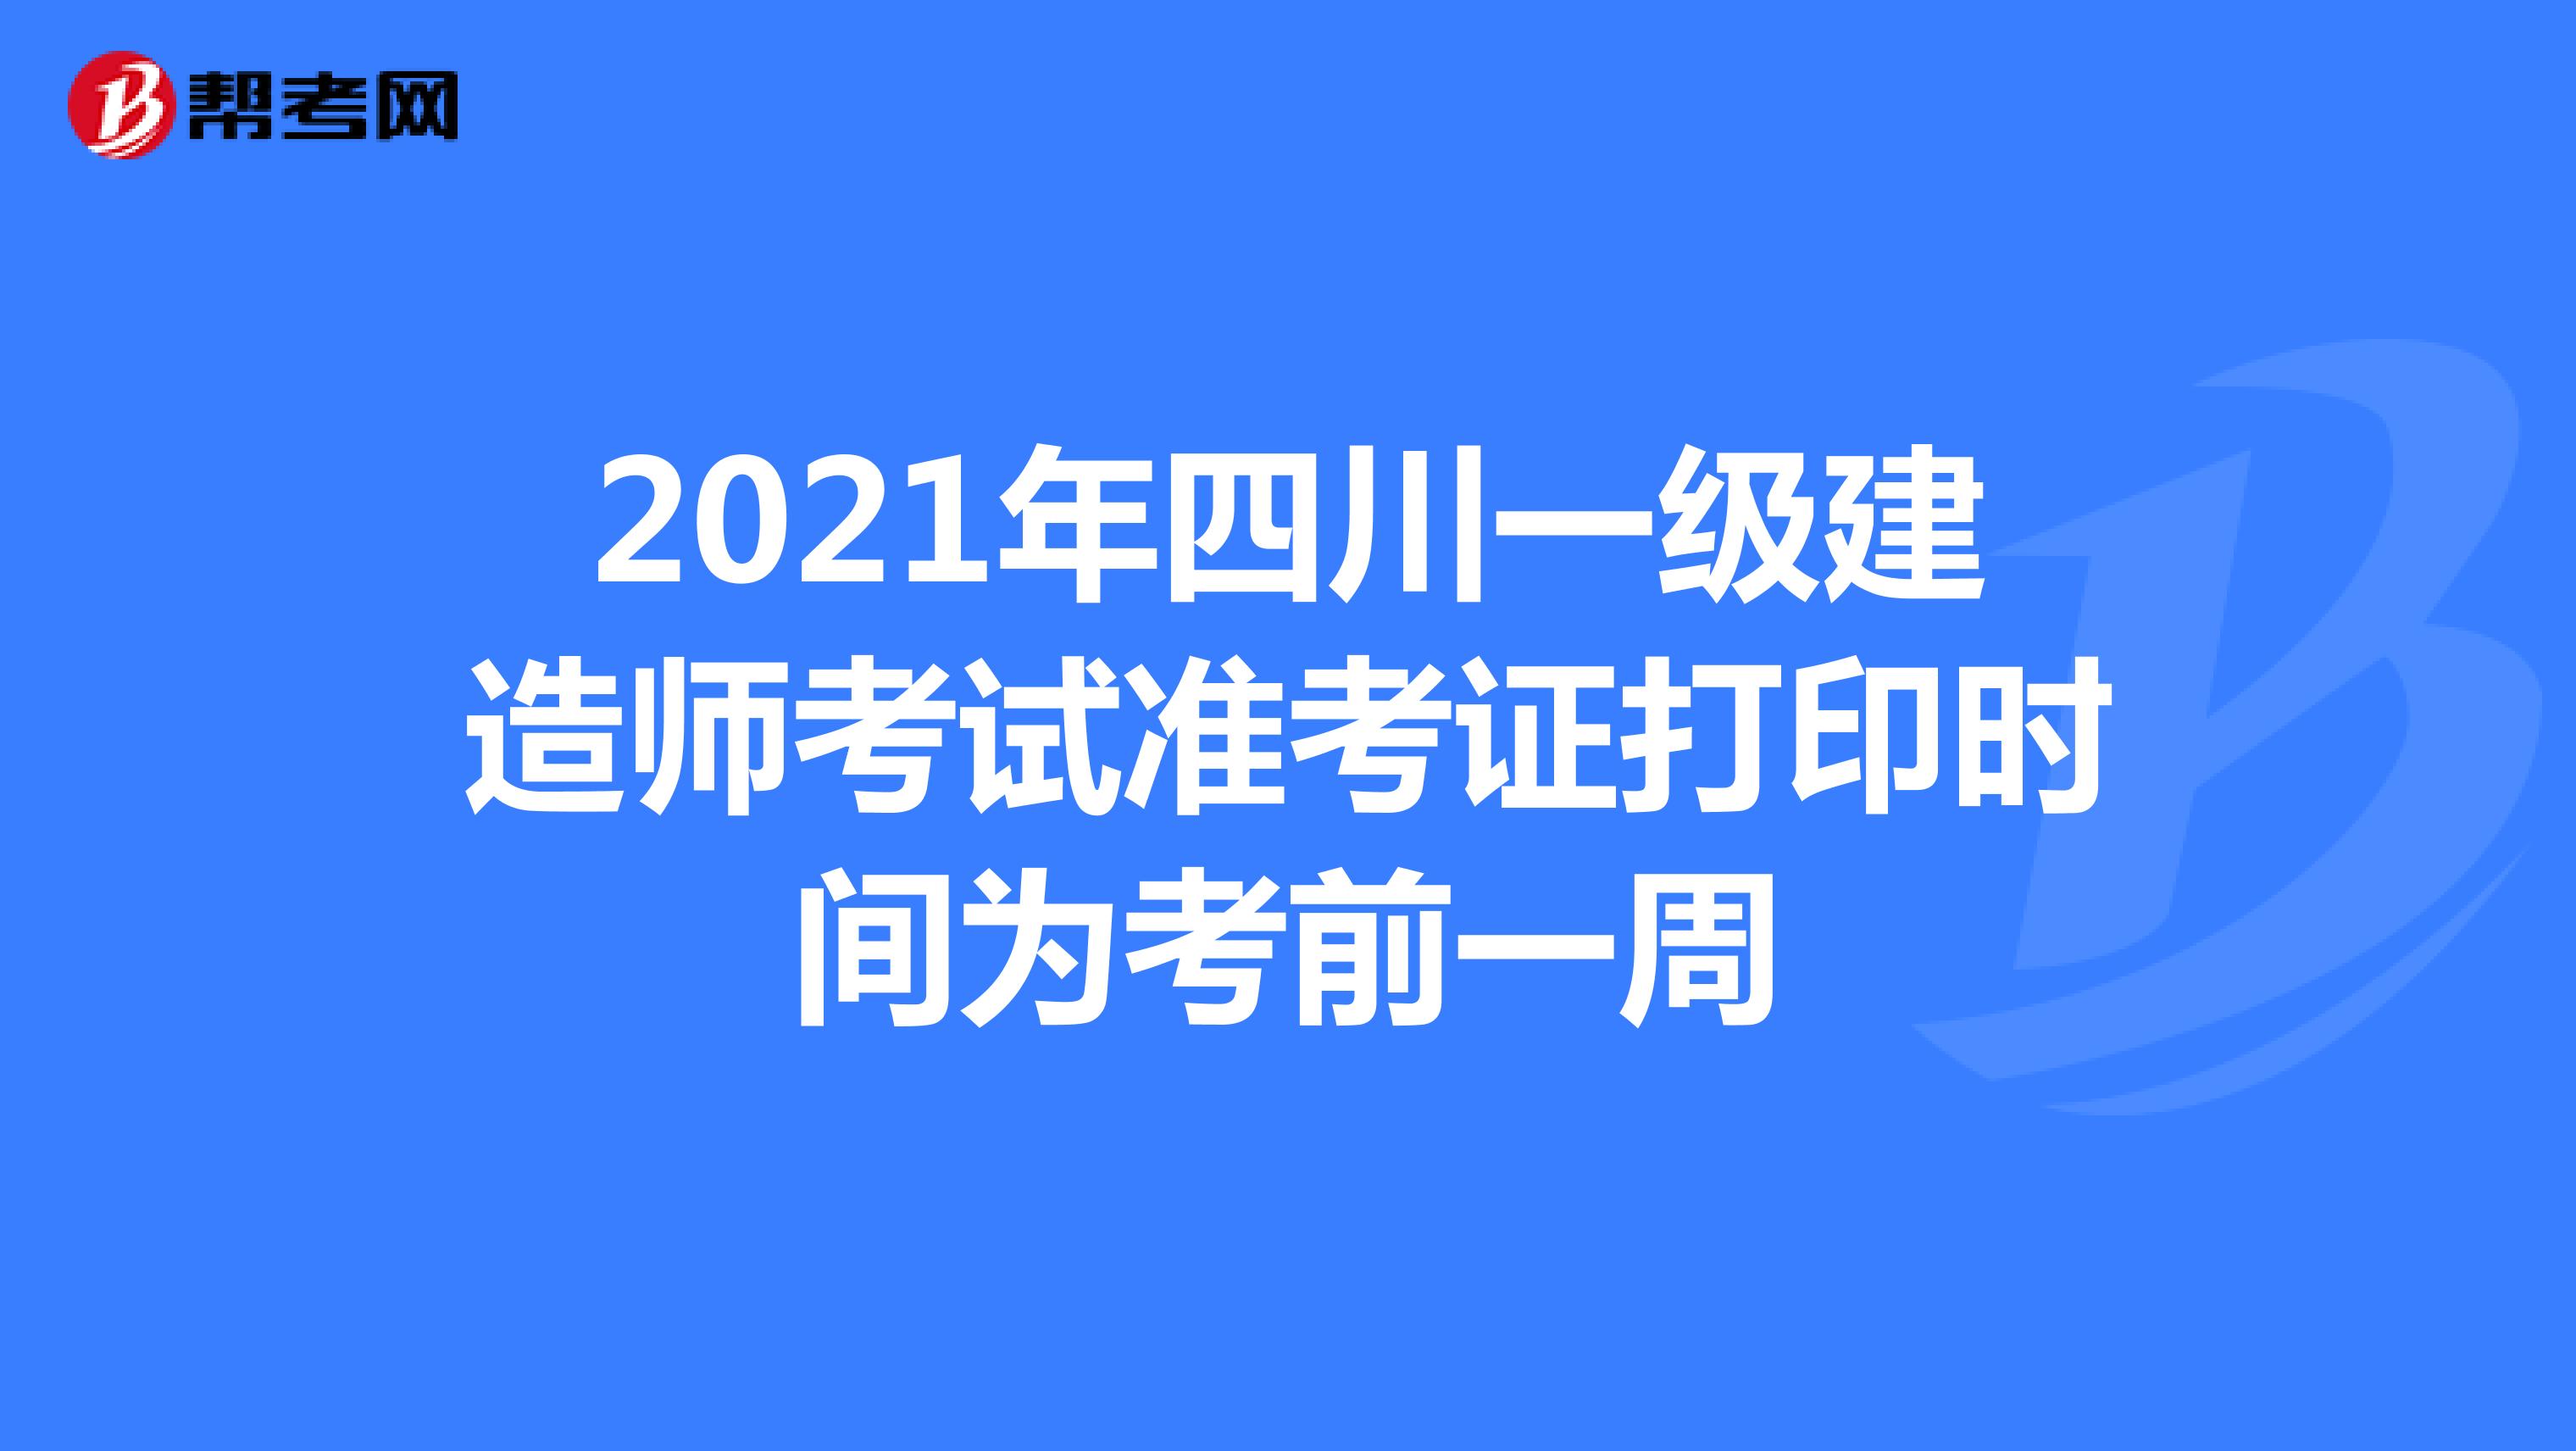 2021年四川一级建造师考试准考证打印时间为考前一周